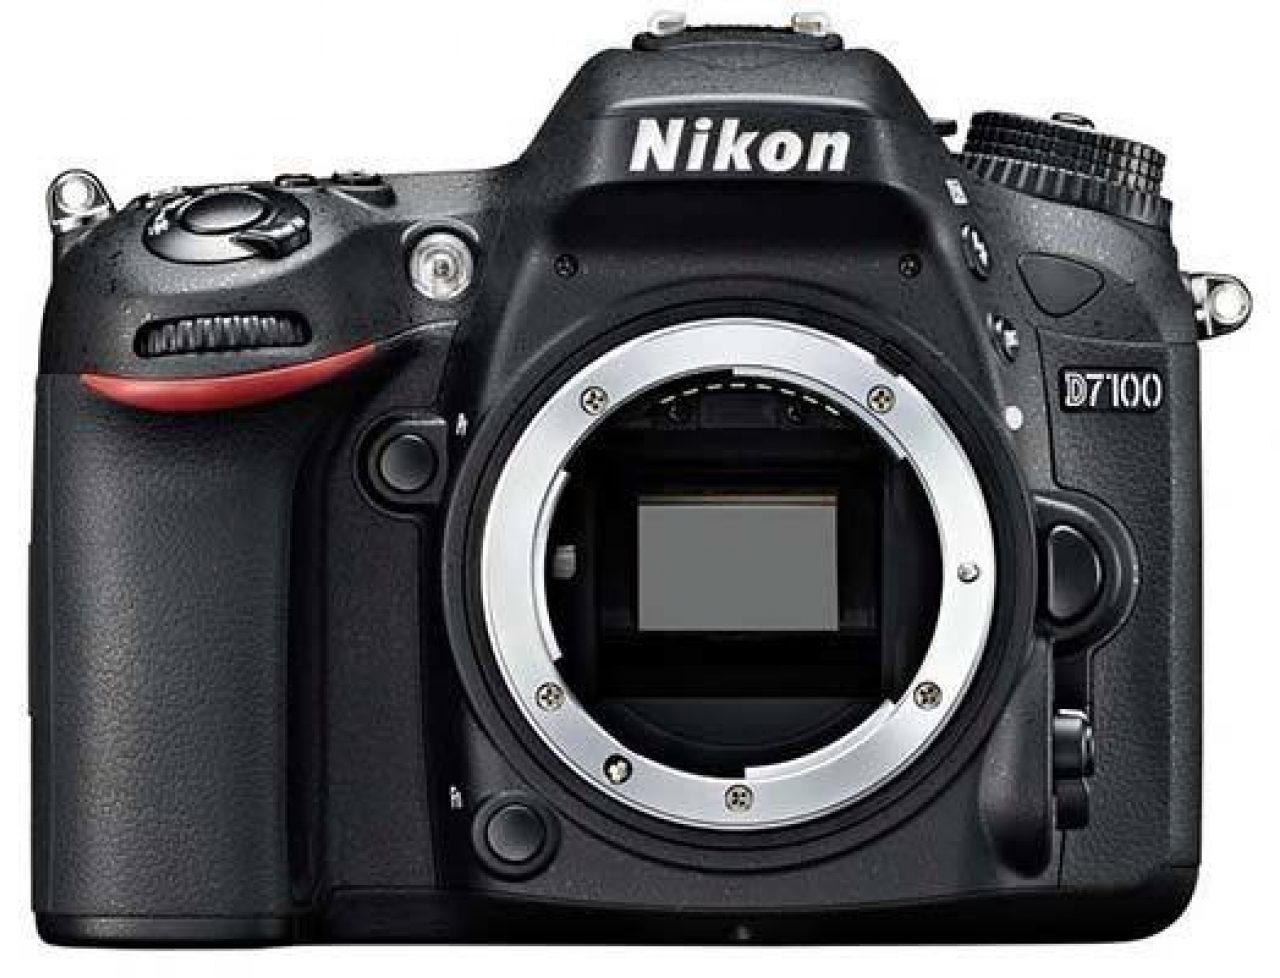 Nikon D7100 Review Photography Blog, Best Lens For Landscape Photography Nikon D7100